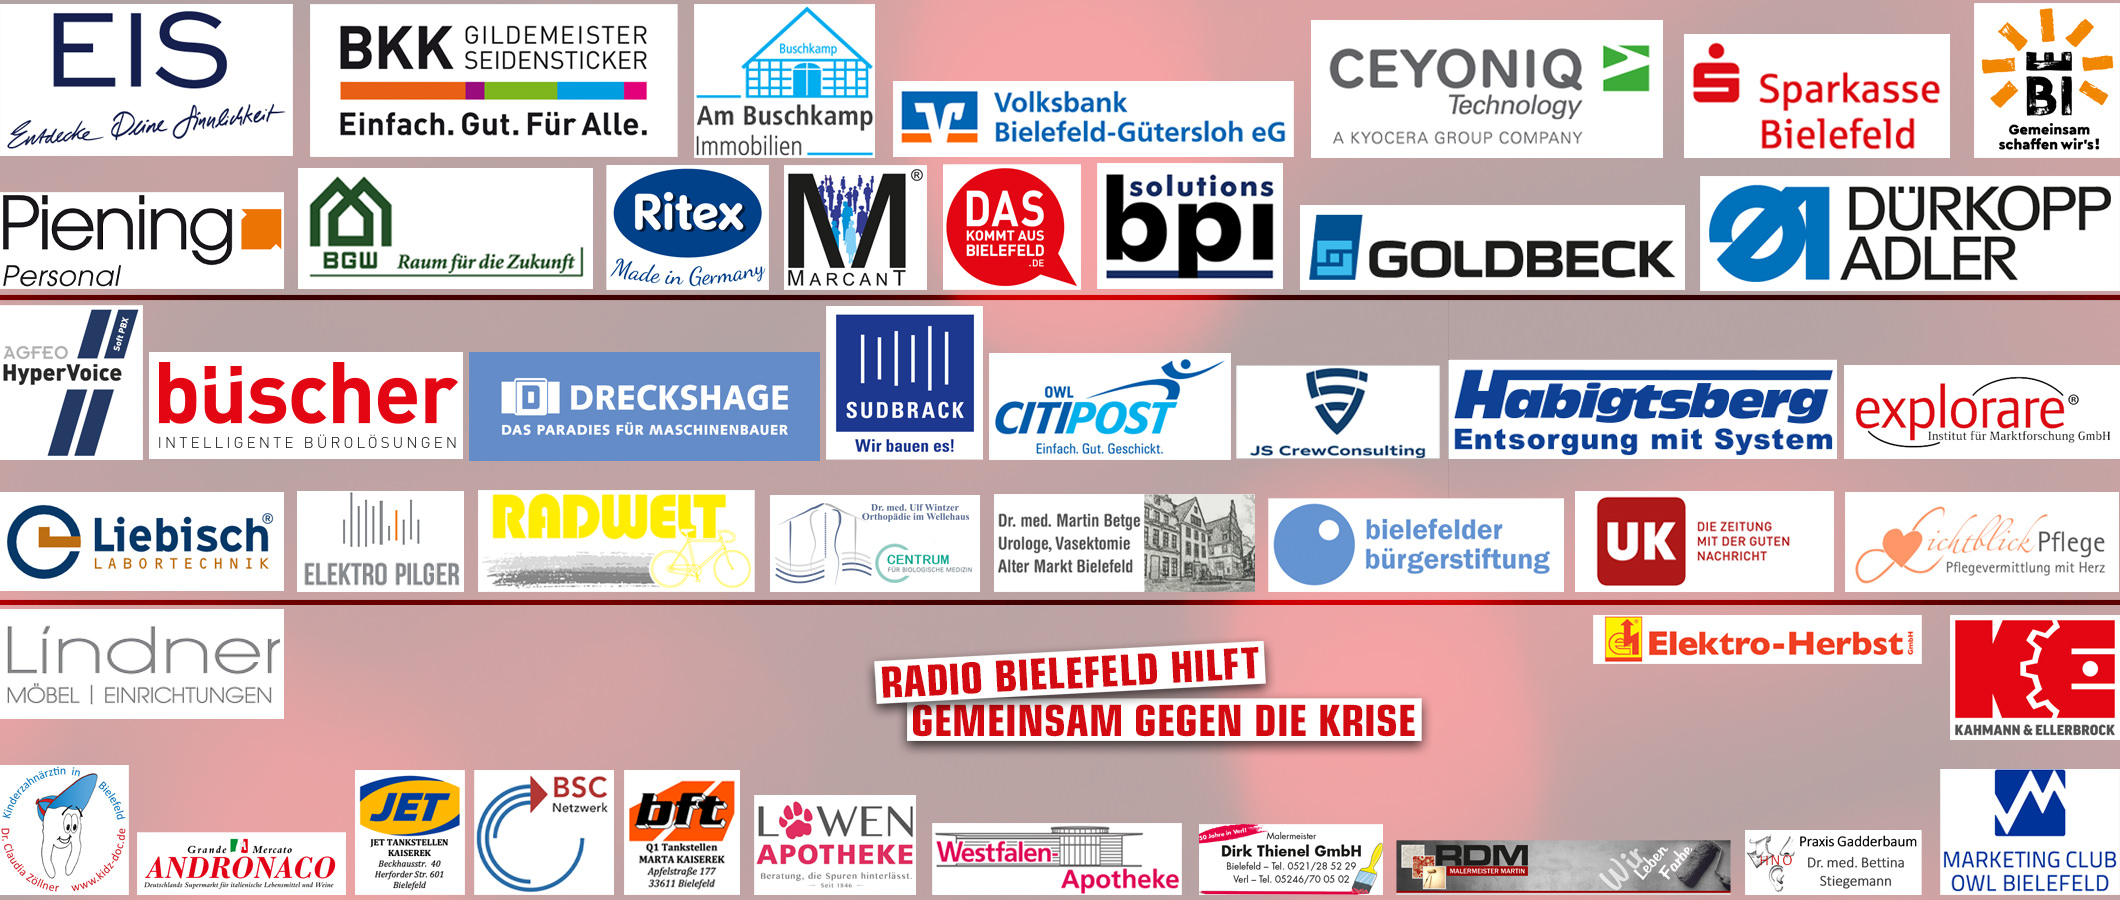 Radio Bielefeld Hilft